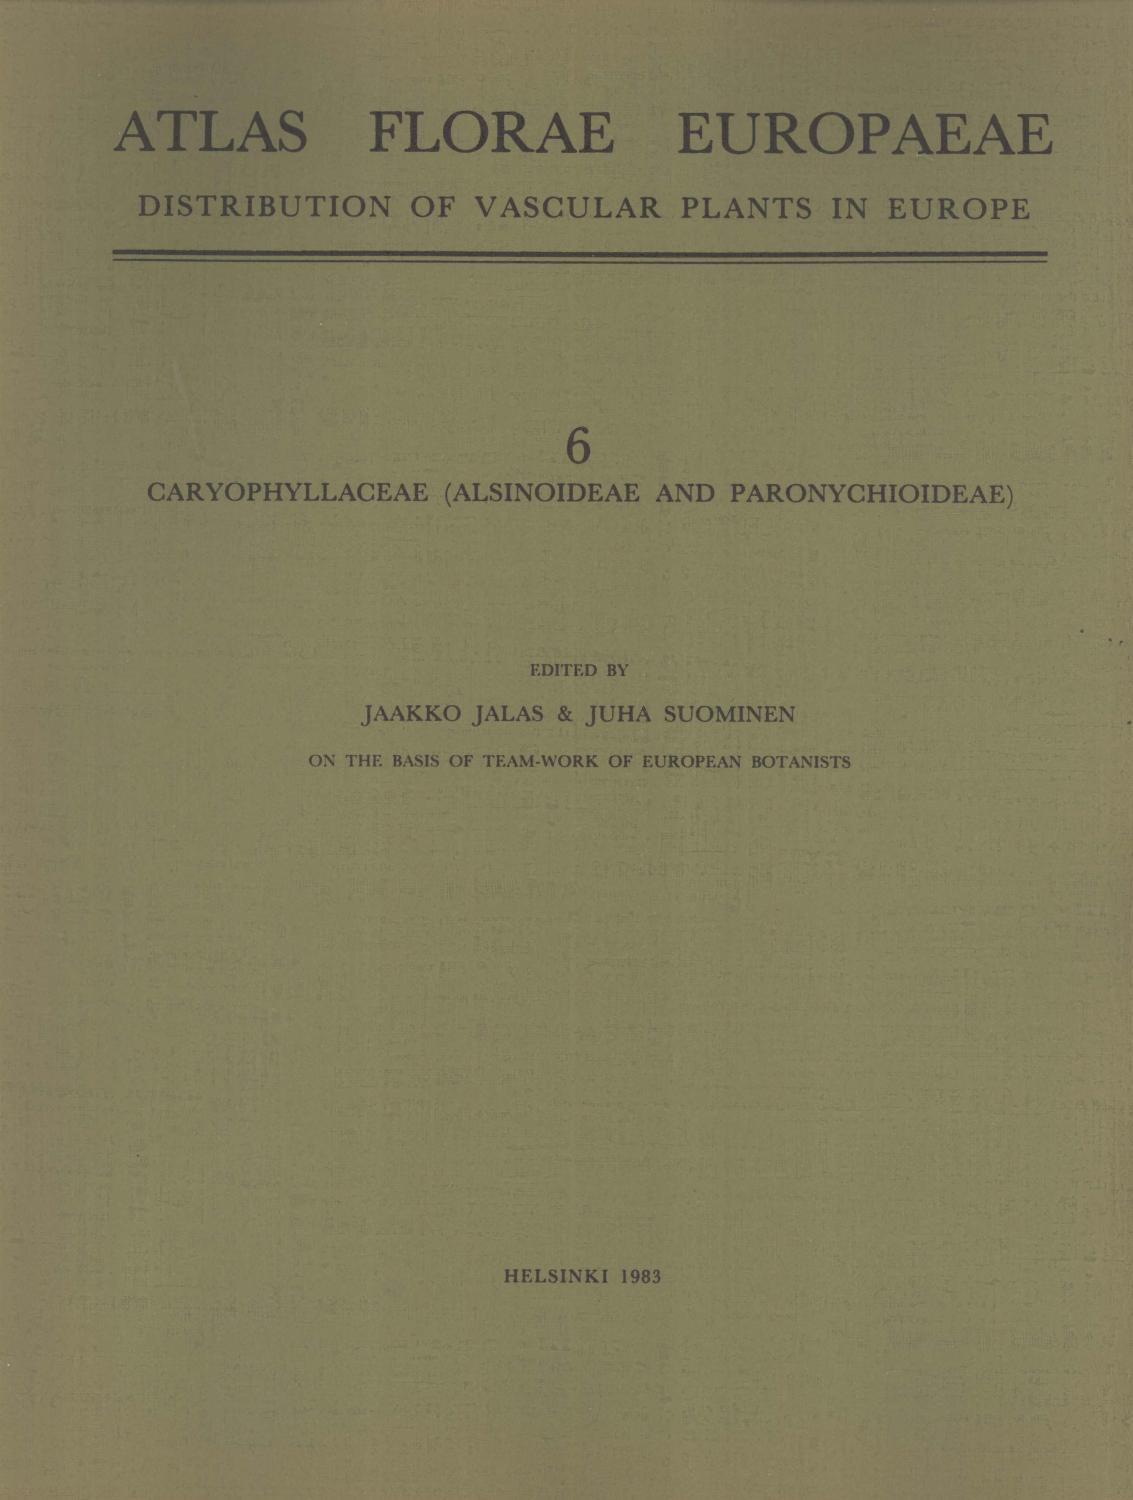 Caryophyllaceae (Alsinoideae and Paronychioidea) (Atlas Florae Europaeae: Distribution of Vascular Plants in Europe, 6) - Jaako Jalas & Juha Suominen (editors)